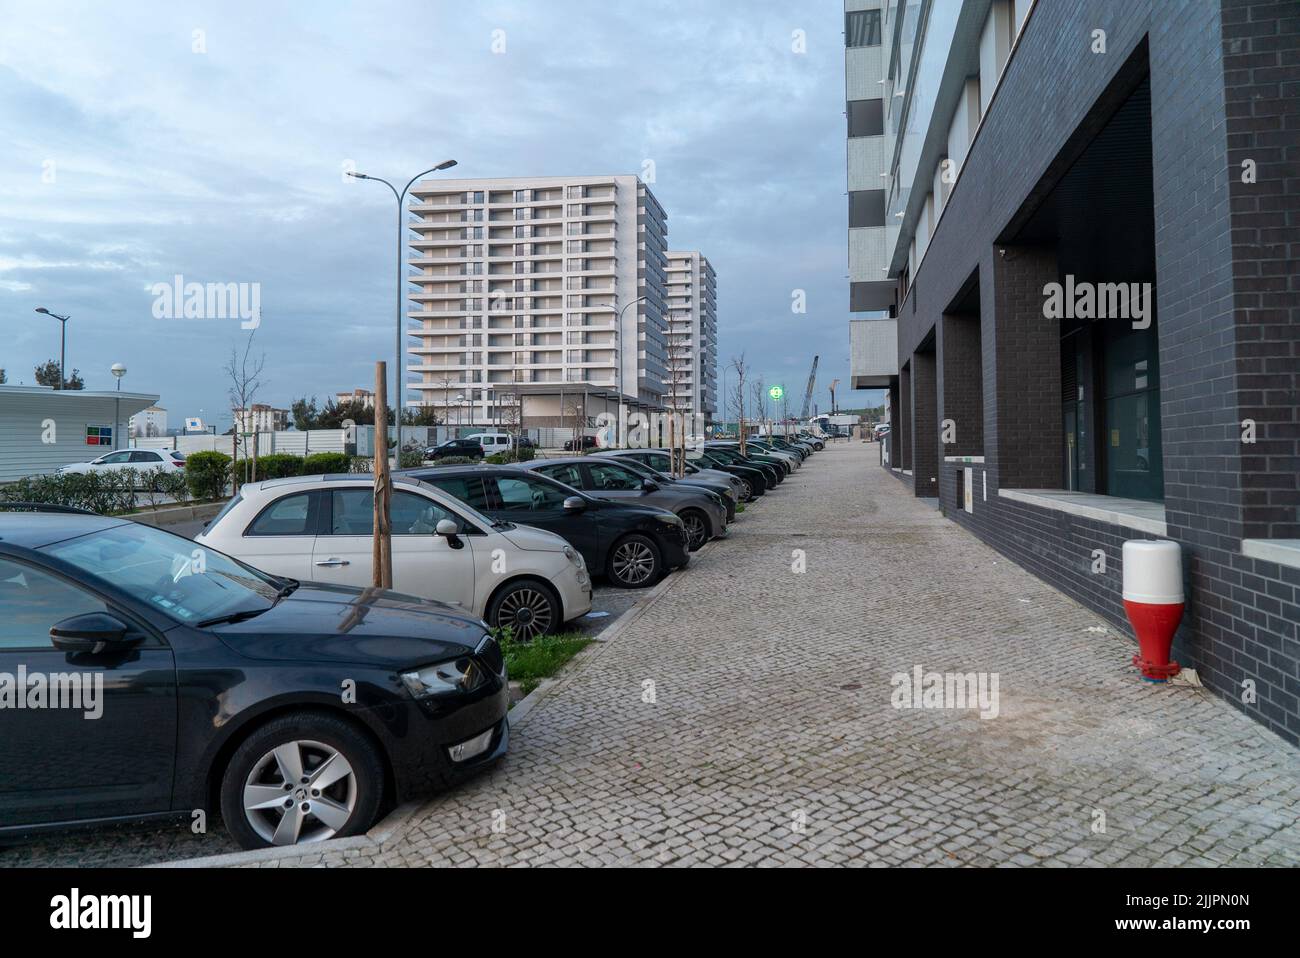 Une rue avec des voitures garées entourée de bâtiments similaires pendant la journée à Lisbonne, Portugal Banque D'Images